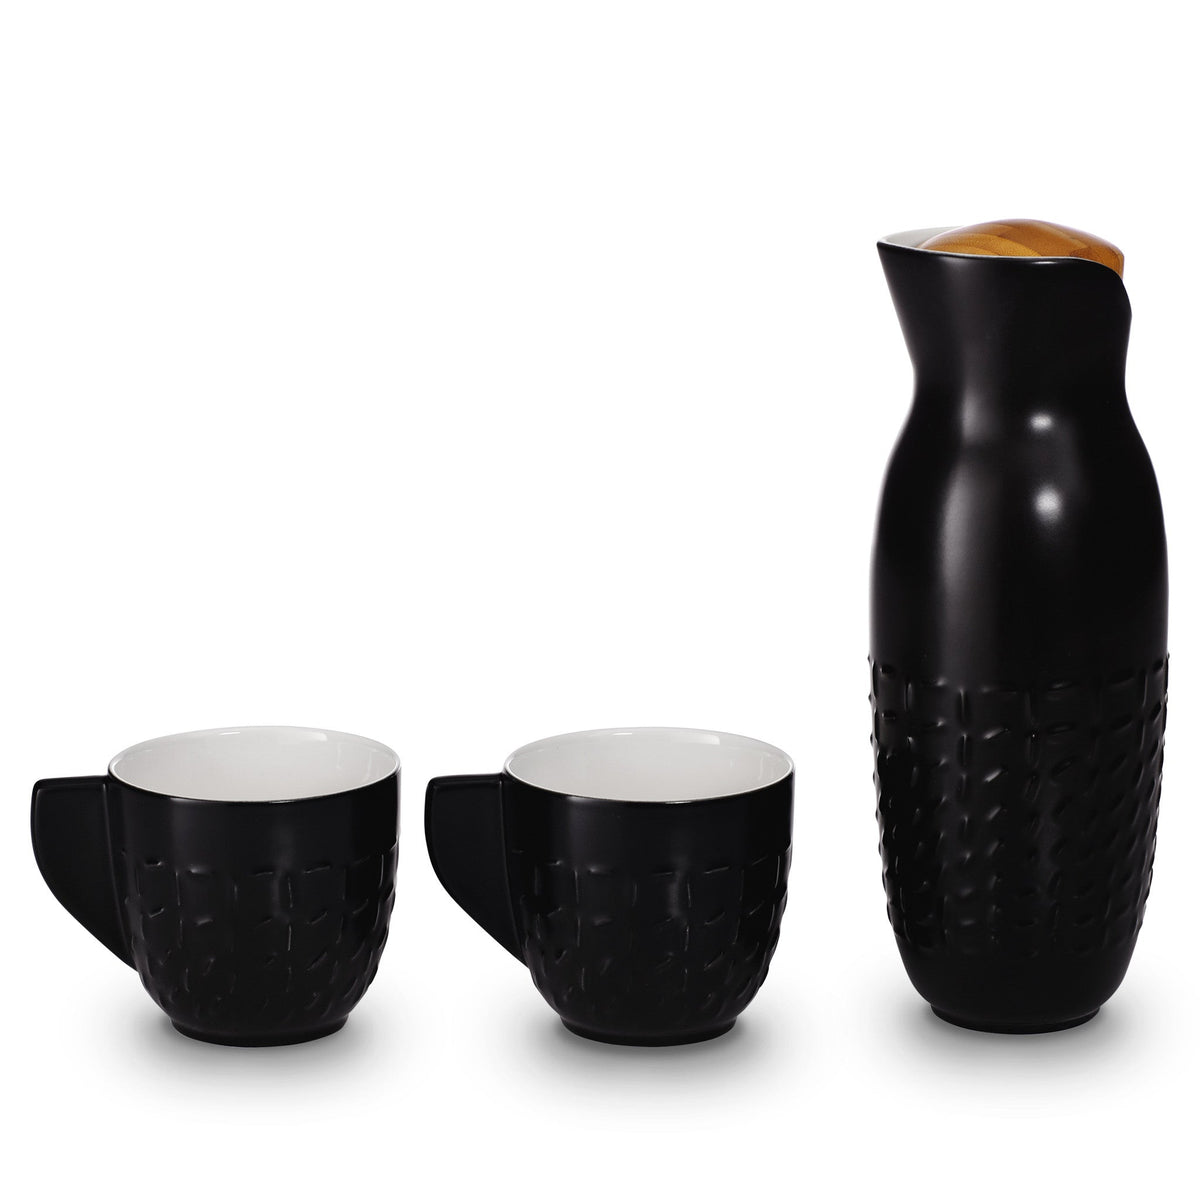 Footprint Carafe Set with Tea Cups, Carafe 31oz, Cup 10 oz, Ceramics, Bamboo-5